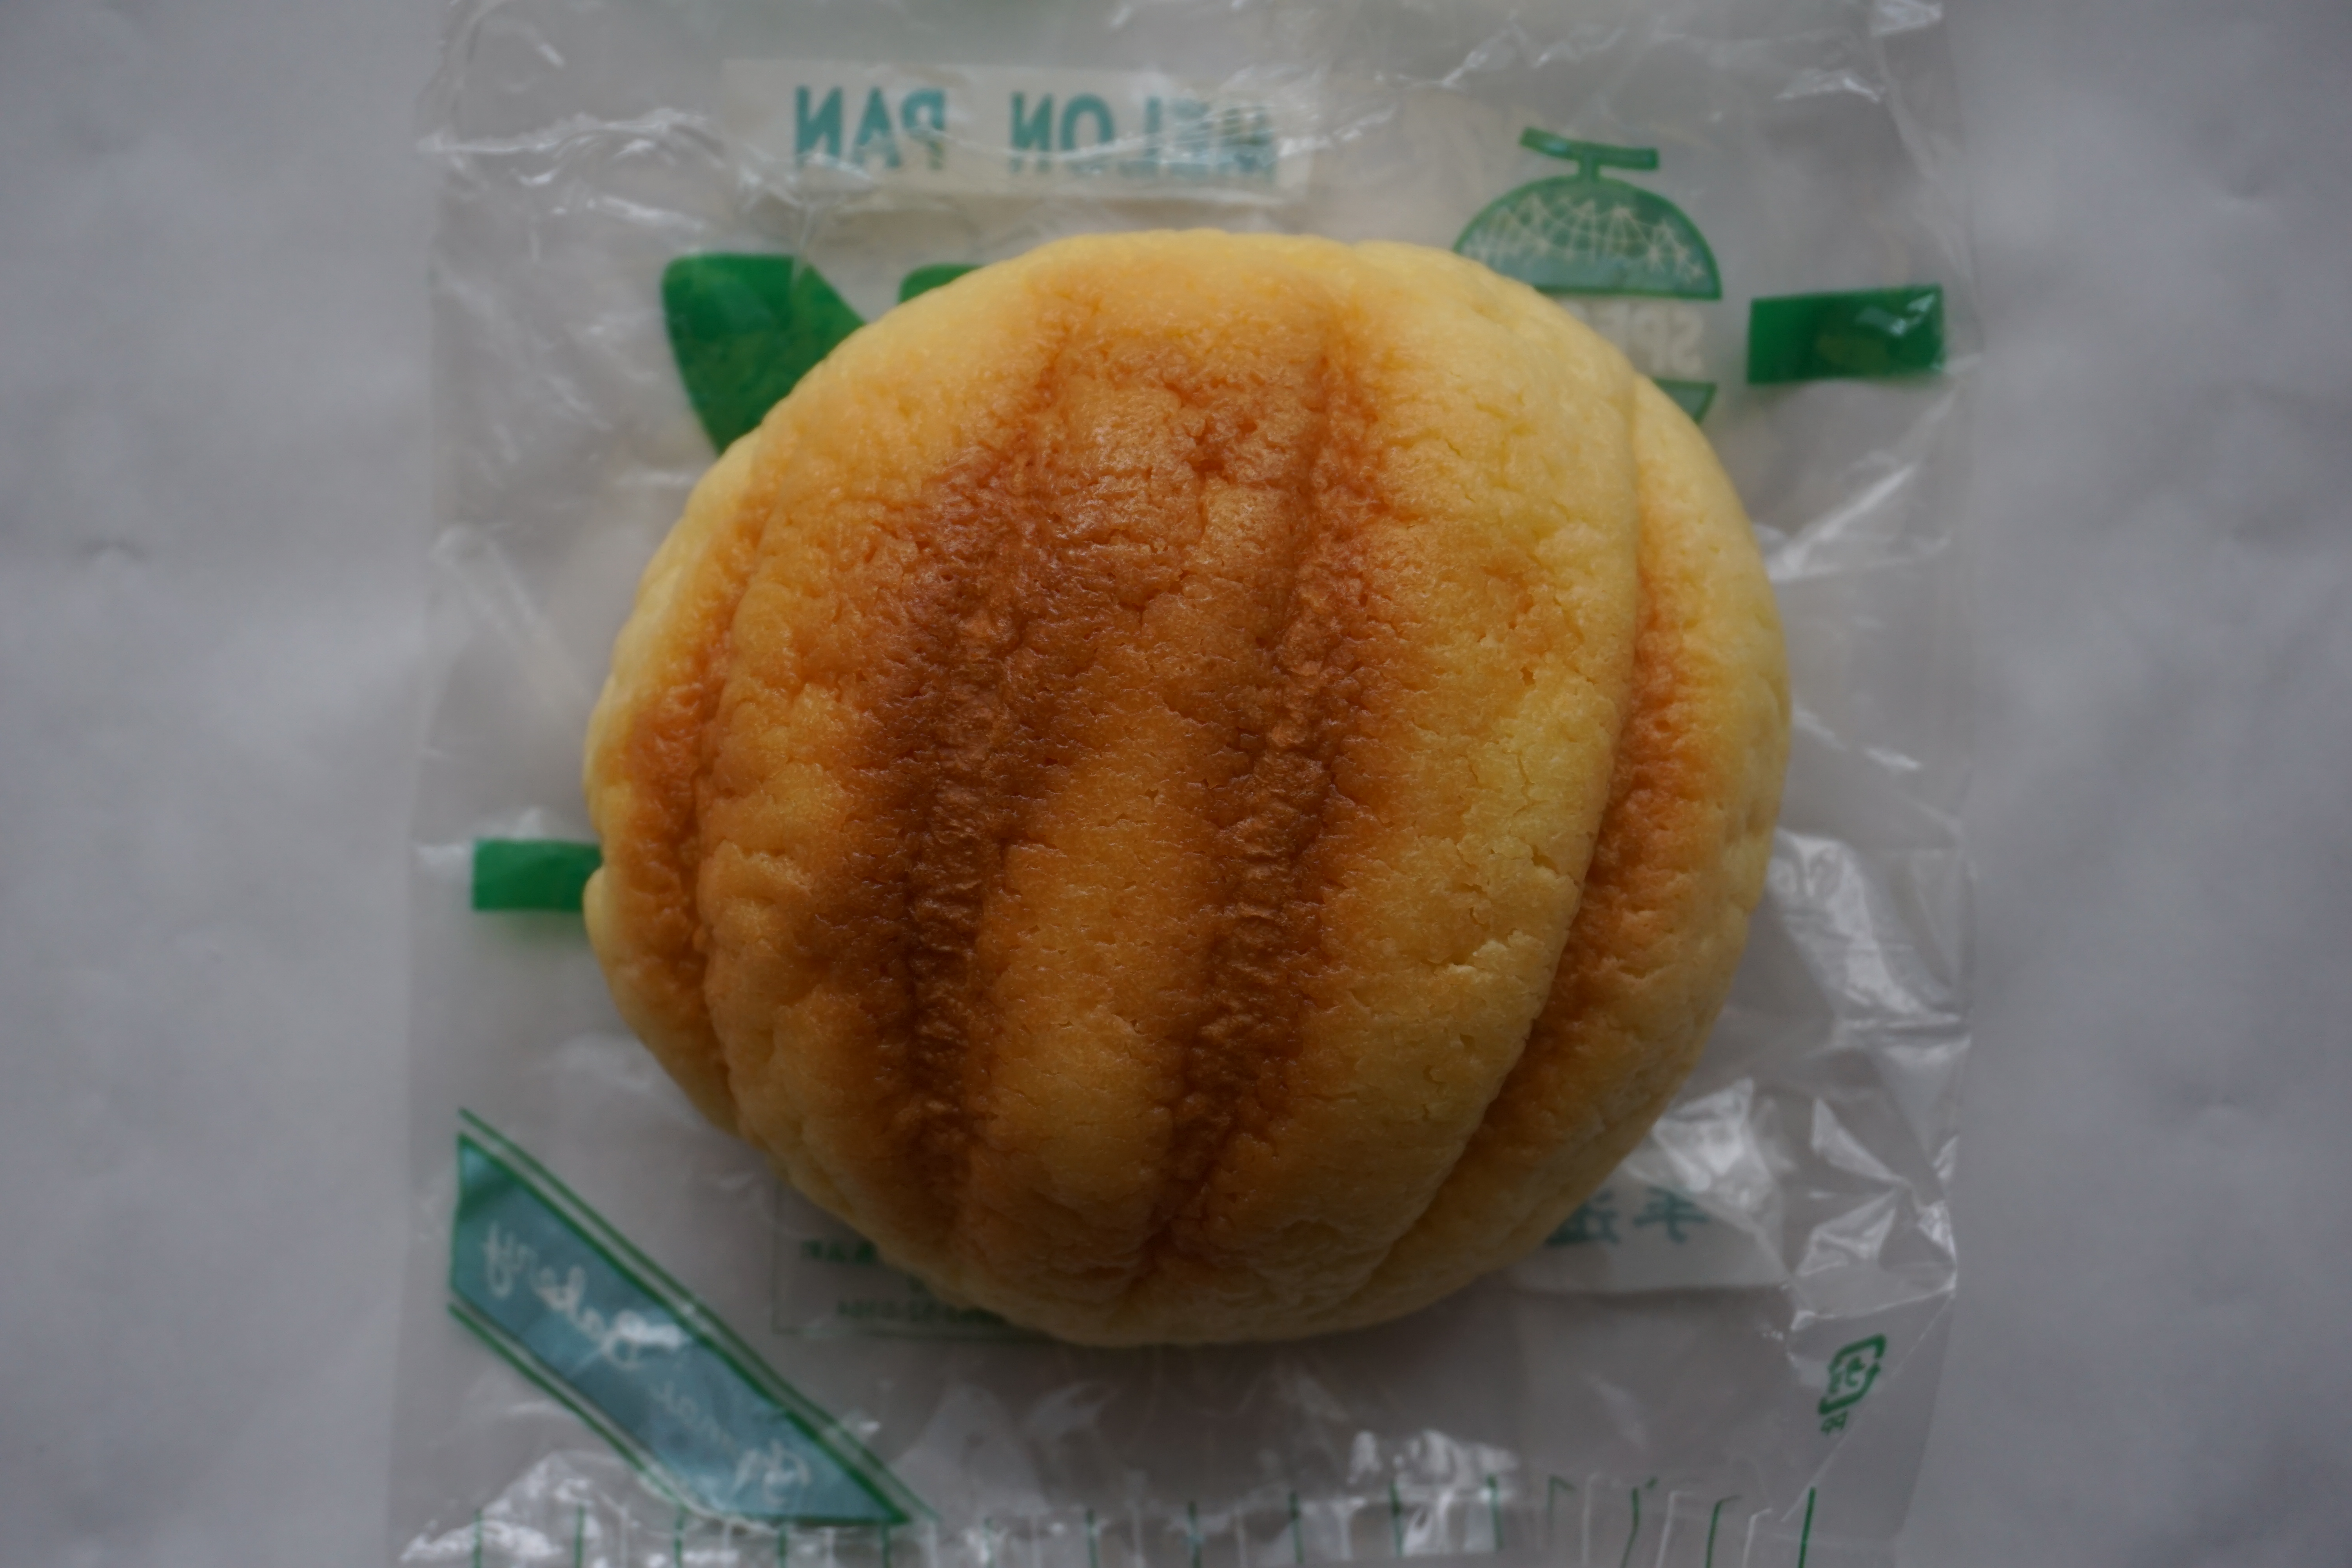 ついつい食べたくなるイチオシの味！長浜商店街にある「玉井菓子舗」さんのメロンパンを購入してきました！